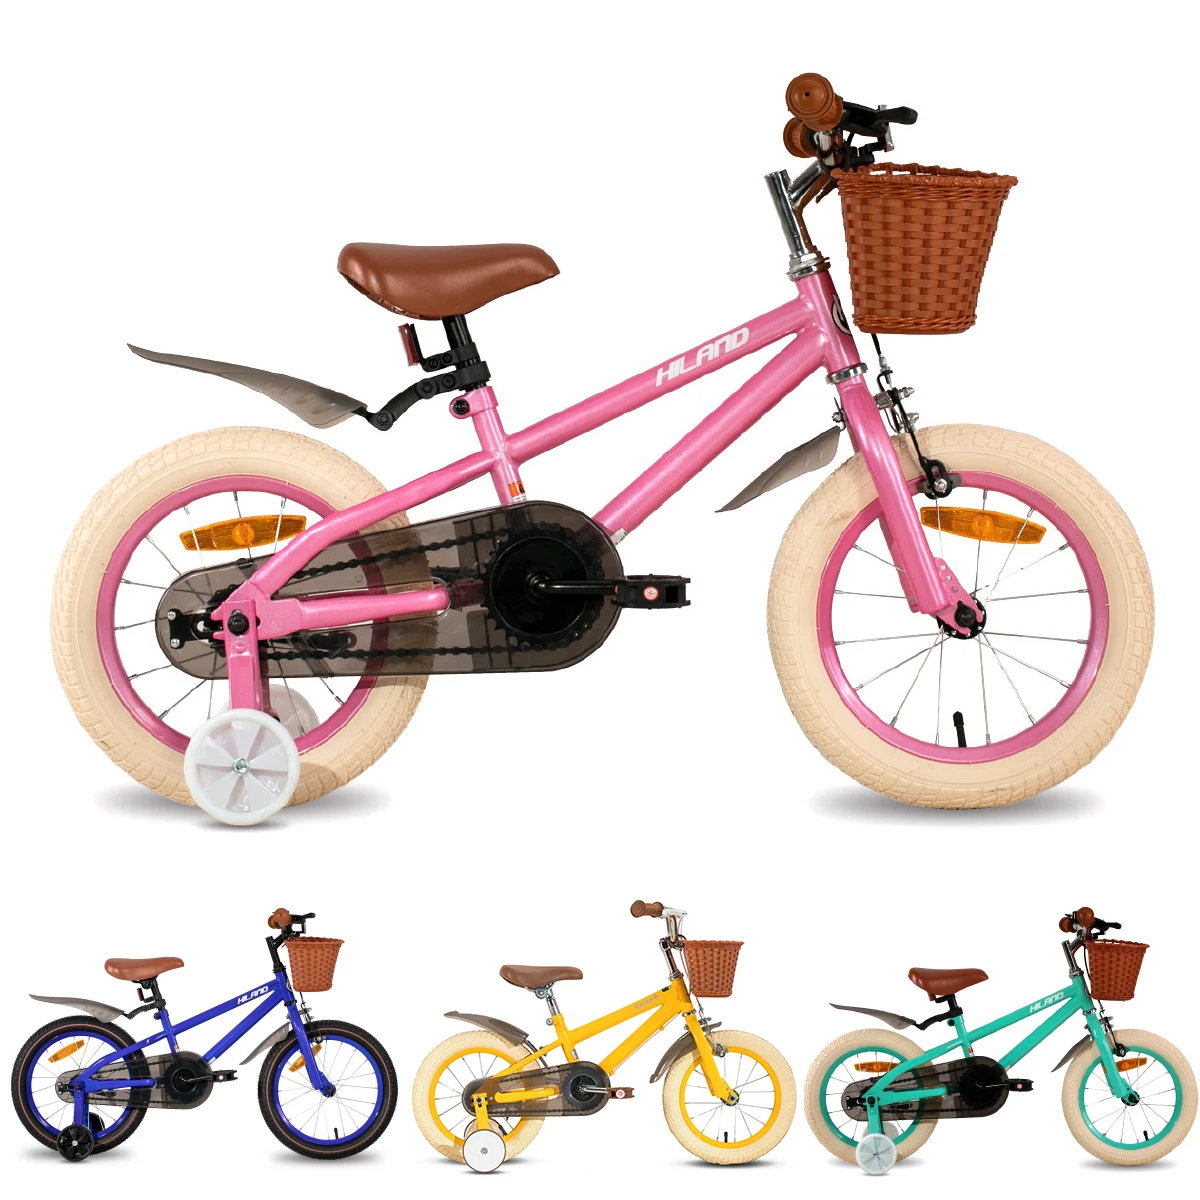 

Велосипед детский, 14 дюймов, 16 дюймов, с тренировочным колесом